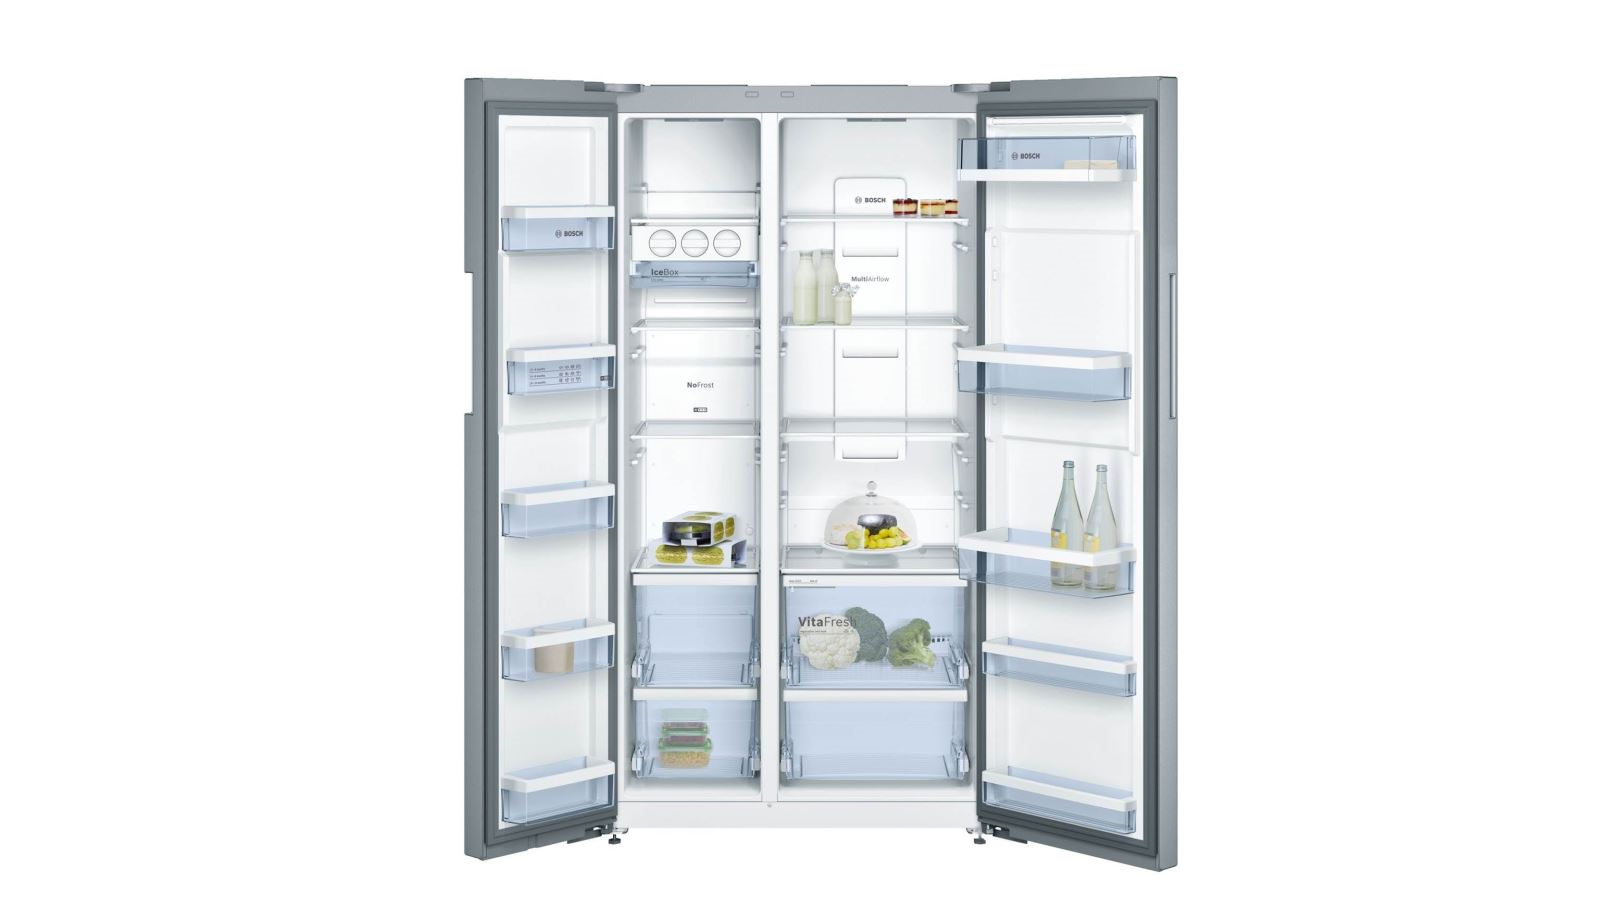 Tủ lạnh Bosch KAN92VI35O được thiết kế với nhiều ngăn cho nhiều mục đích sử dụng khác nhau